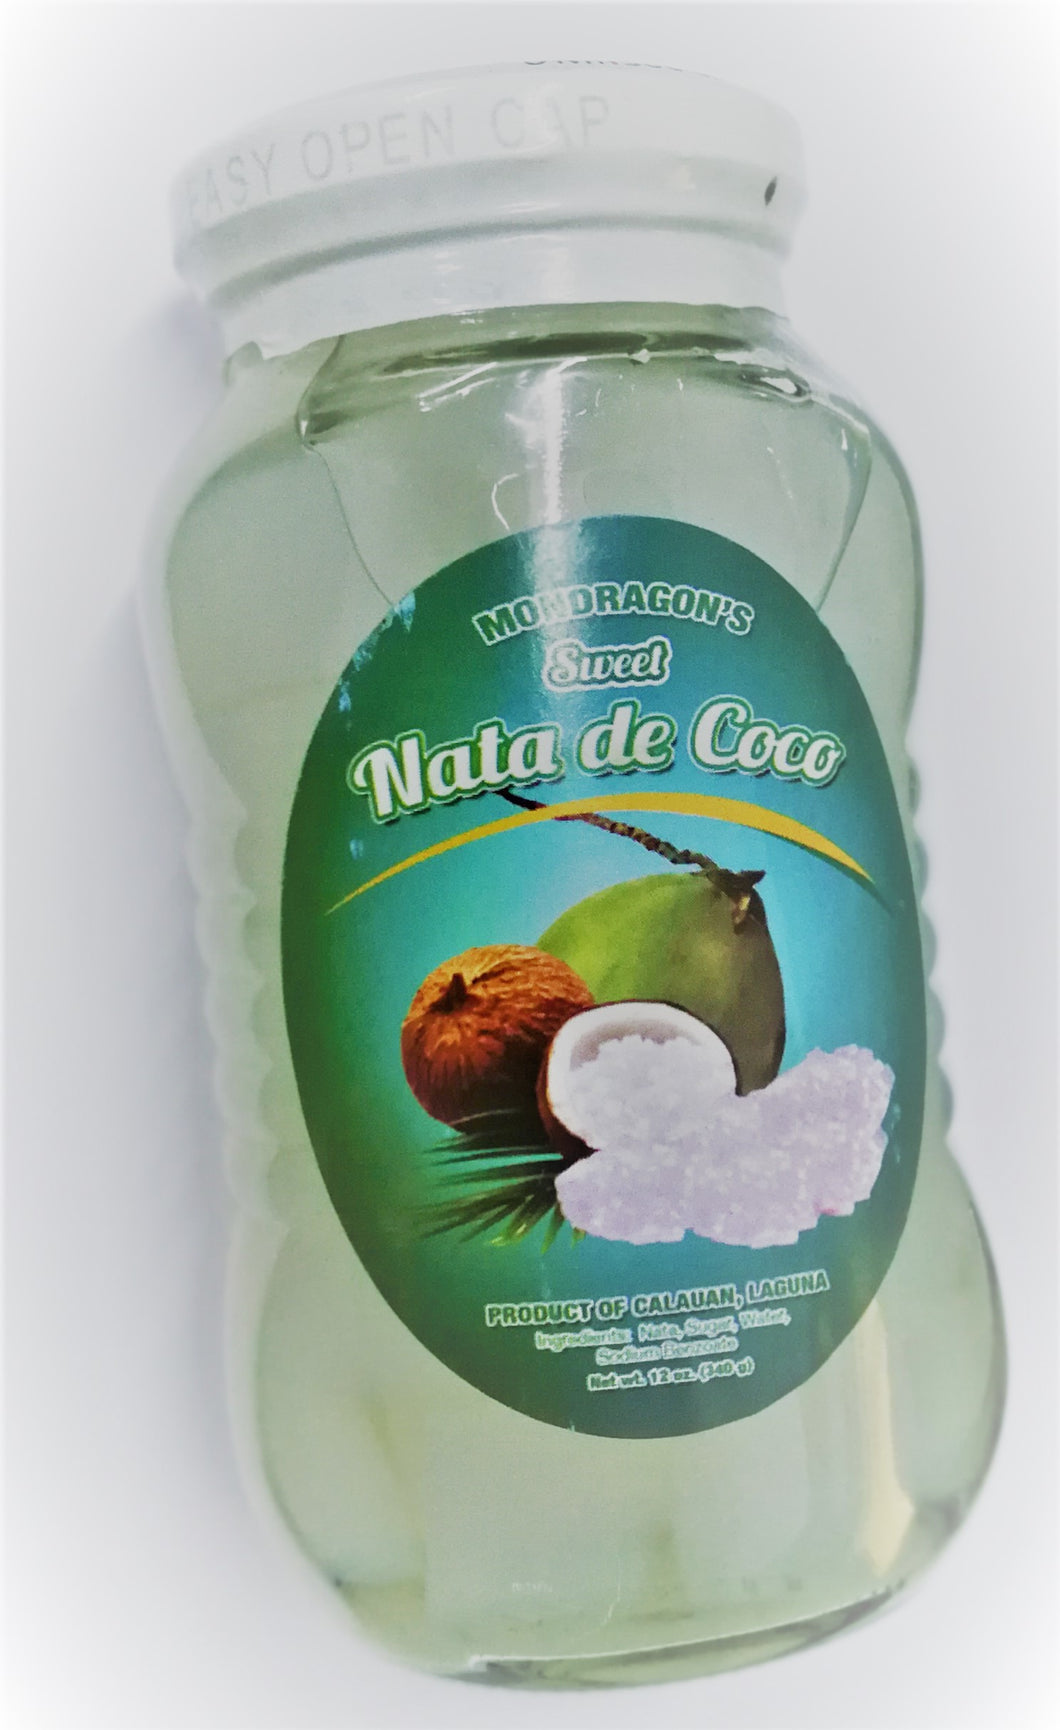 Mondragon's Sweet Nata De Coco